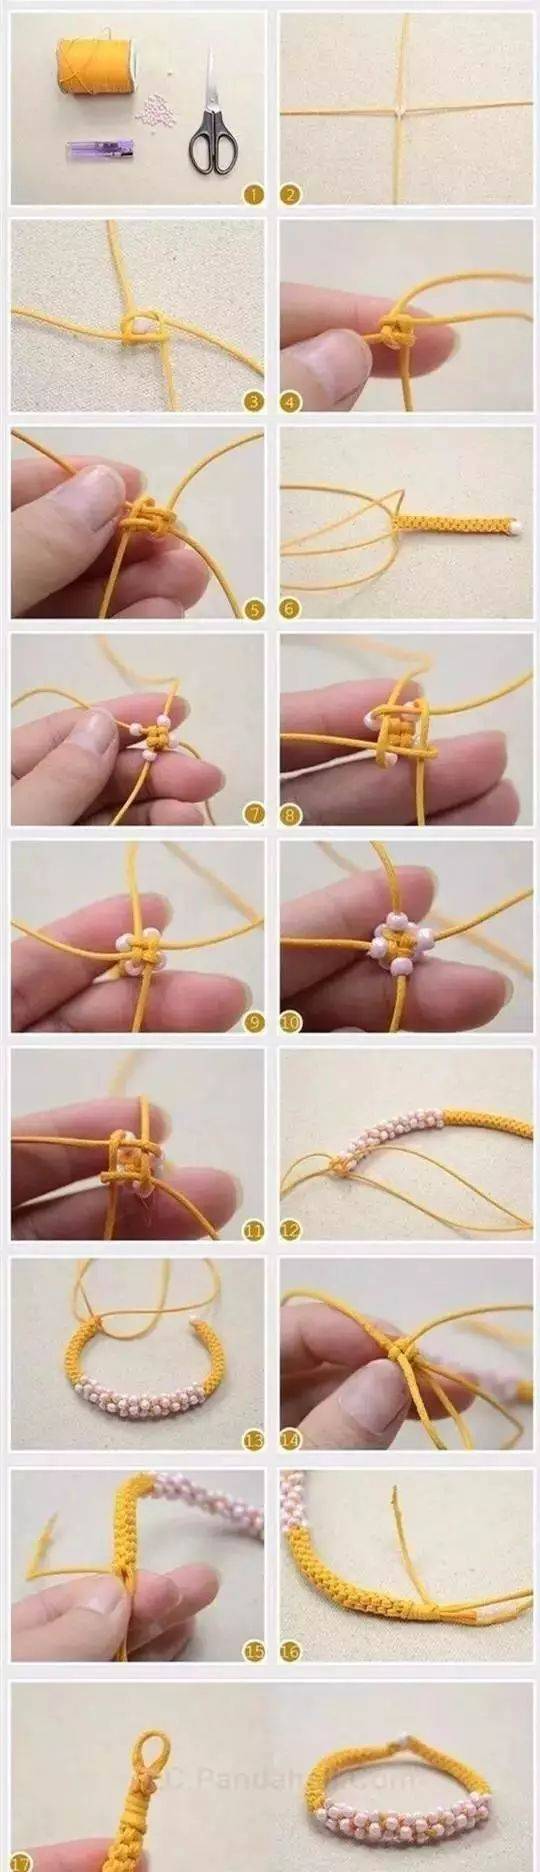 毛线编织手链教程可爱图片